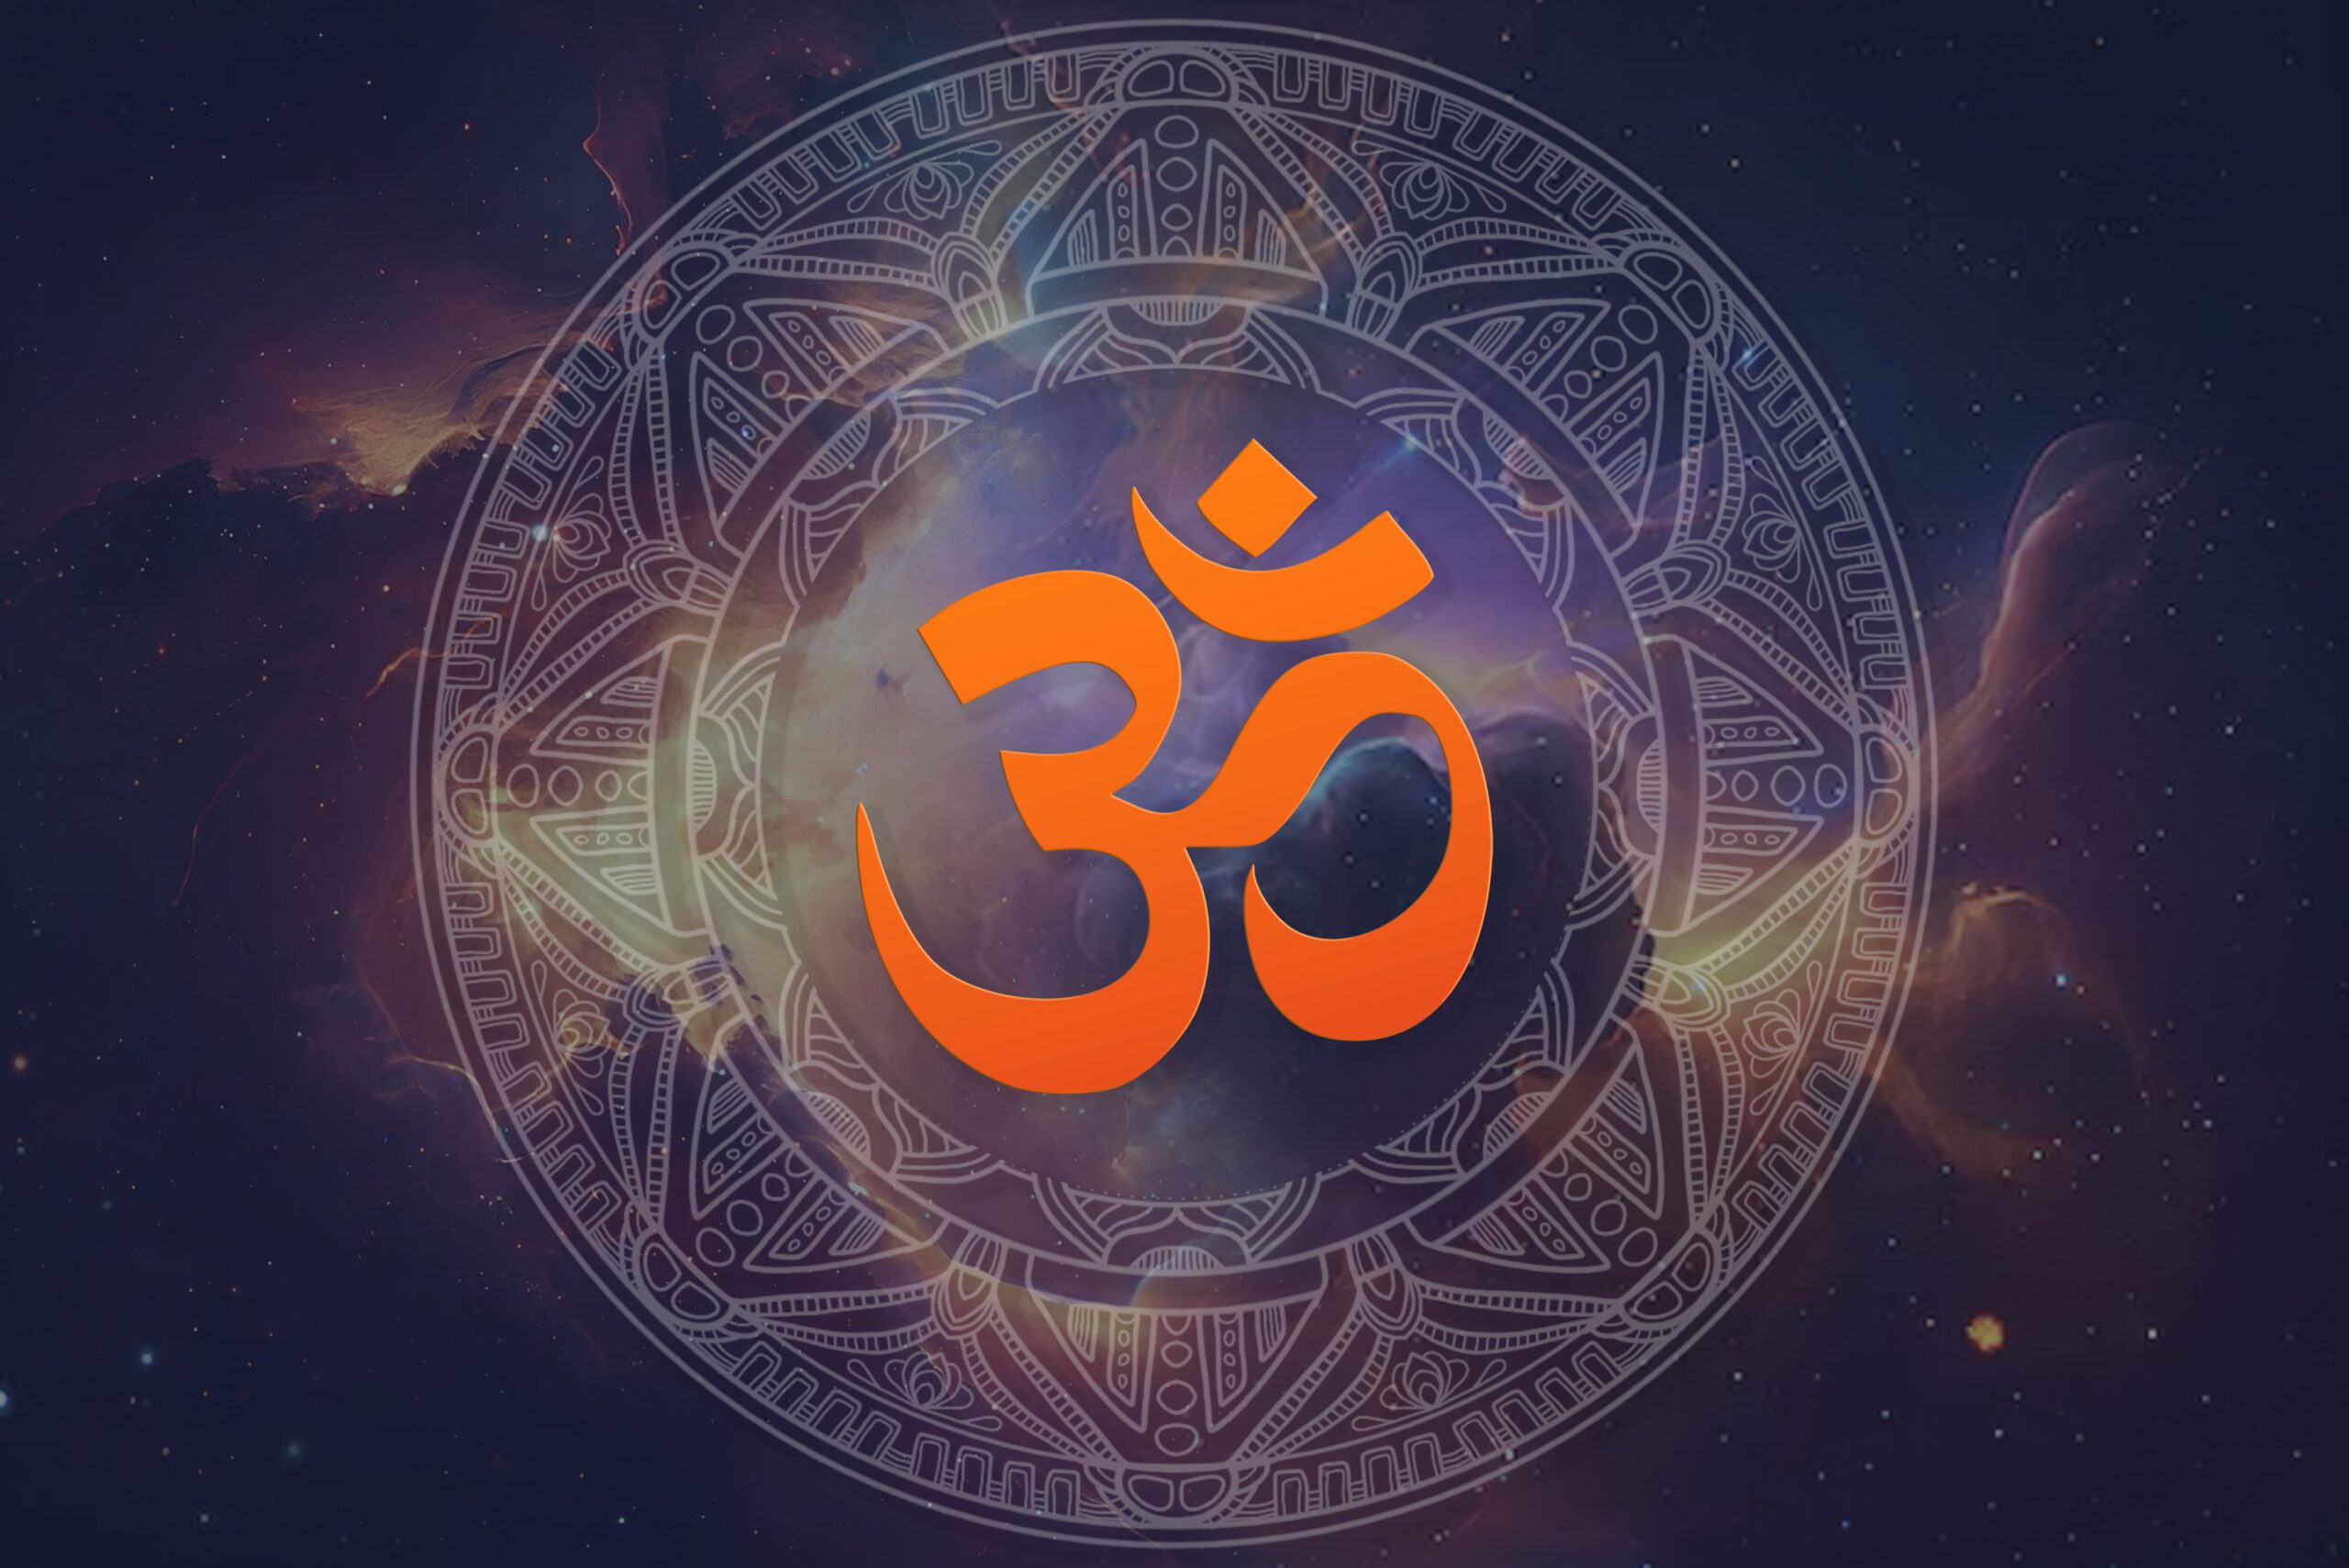 ヒンドゥー教のシンボル - ヒンドゥー教で使用される 101 のシンボル - オウム真理教のデスクトップ壁紙 - フル HD - ヒンドゥー教のよくある質問